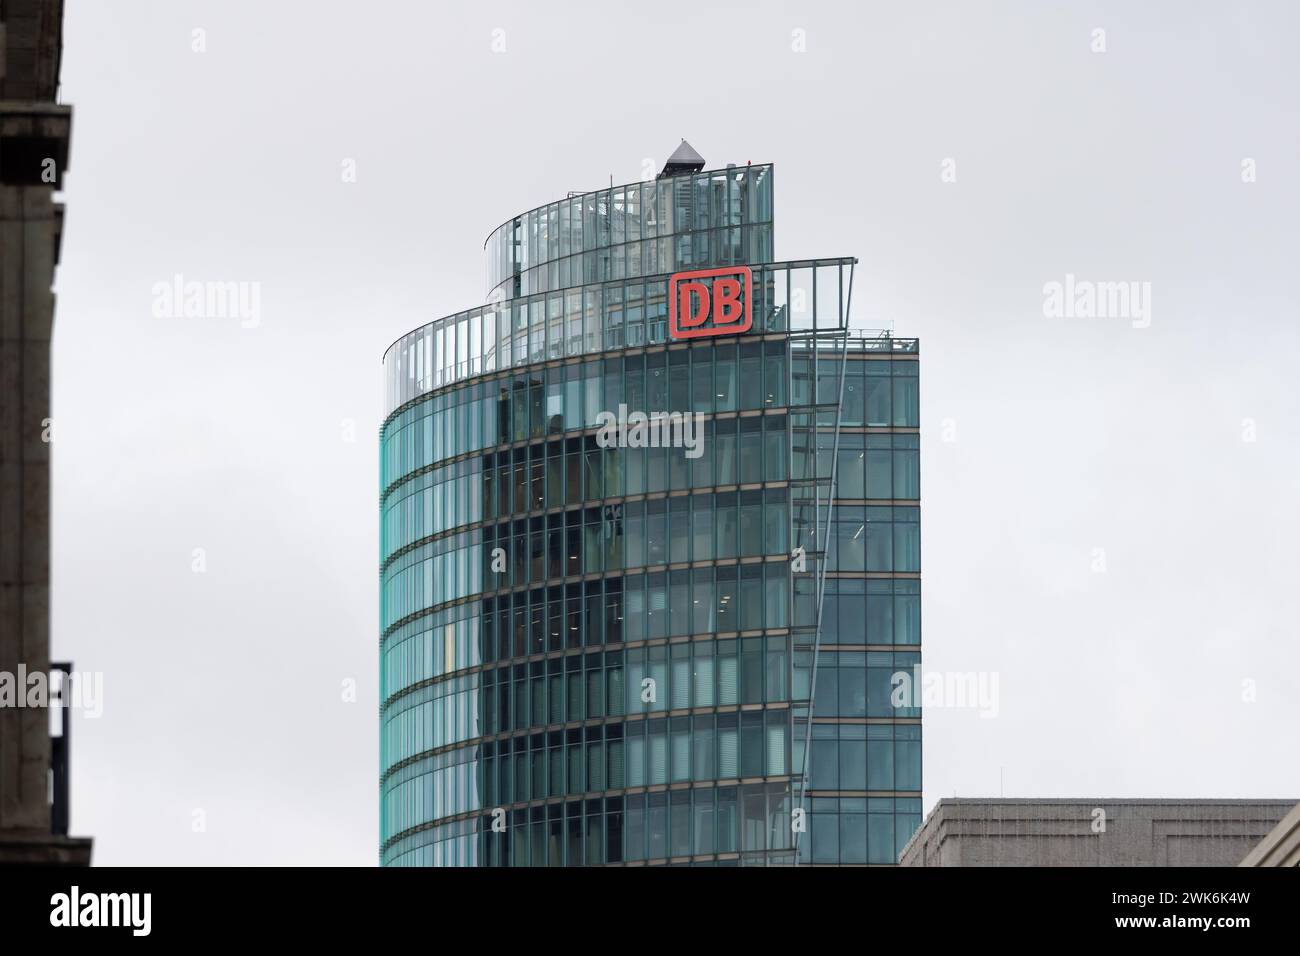 Bahnturm der Firma Deutsche Bahn am Potsdamer Platz. Das Außengebäude des Wolkenkratzers hat eine moderne Glasfassade. Kommerzielle Architektur in Berlin. Stockfoto